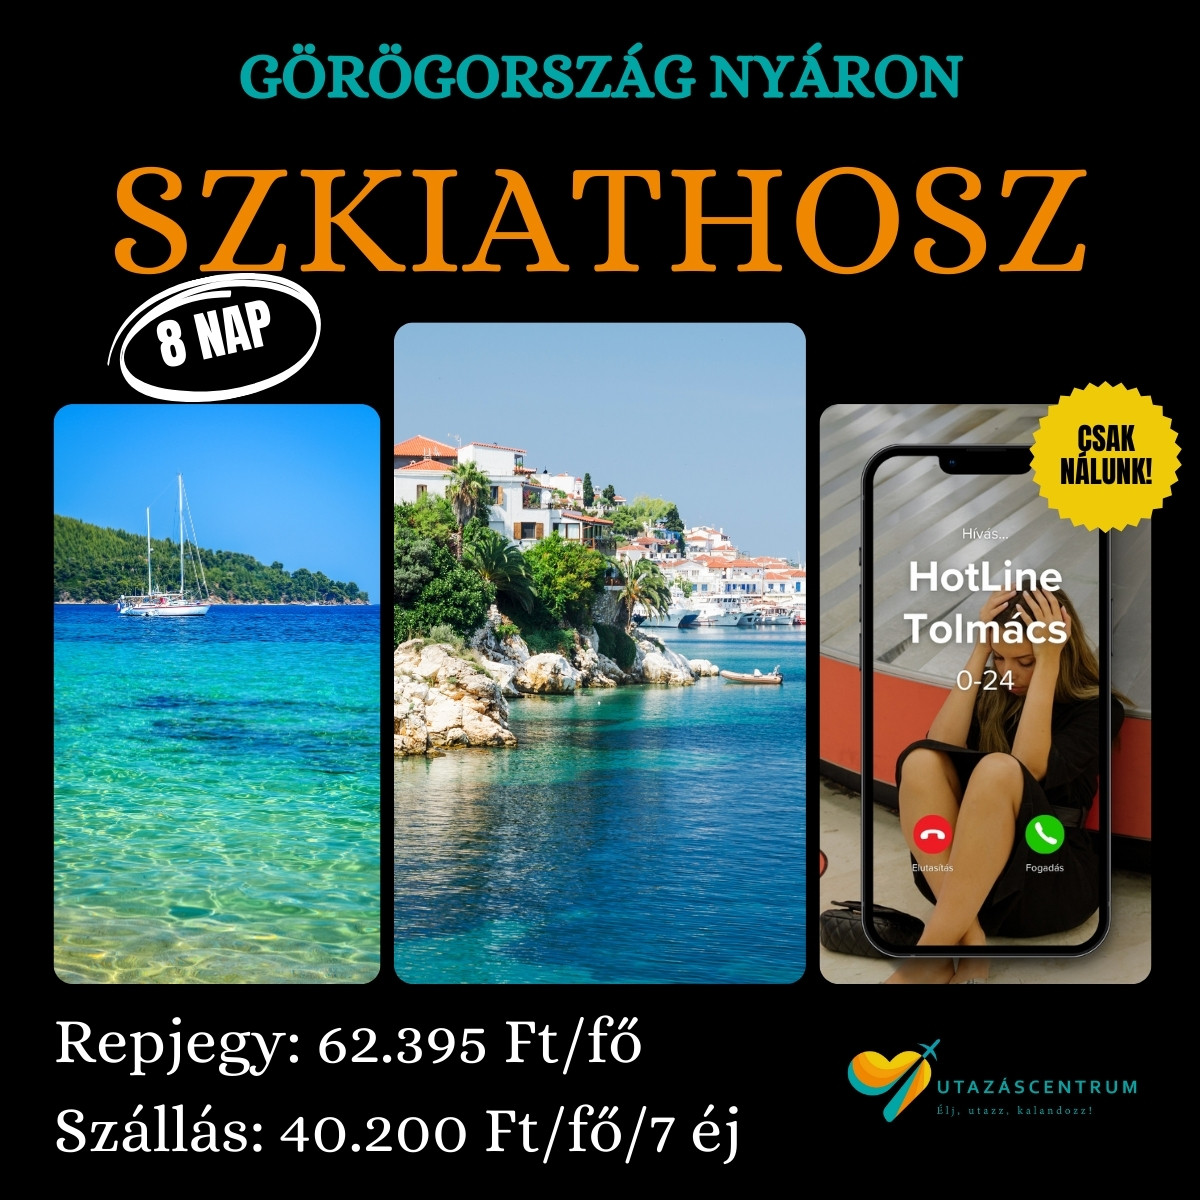 Görögország görög szigetek Szkíathosz nyarlás utazás városlátogatás blog utazáscentrum szállás